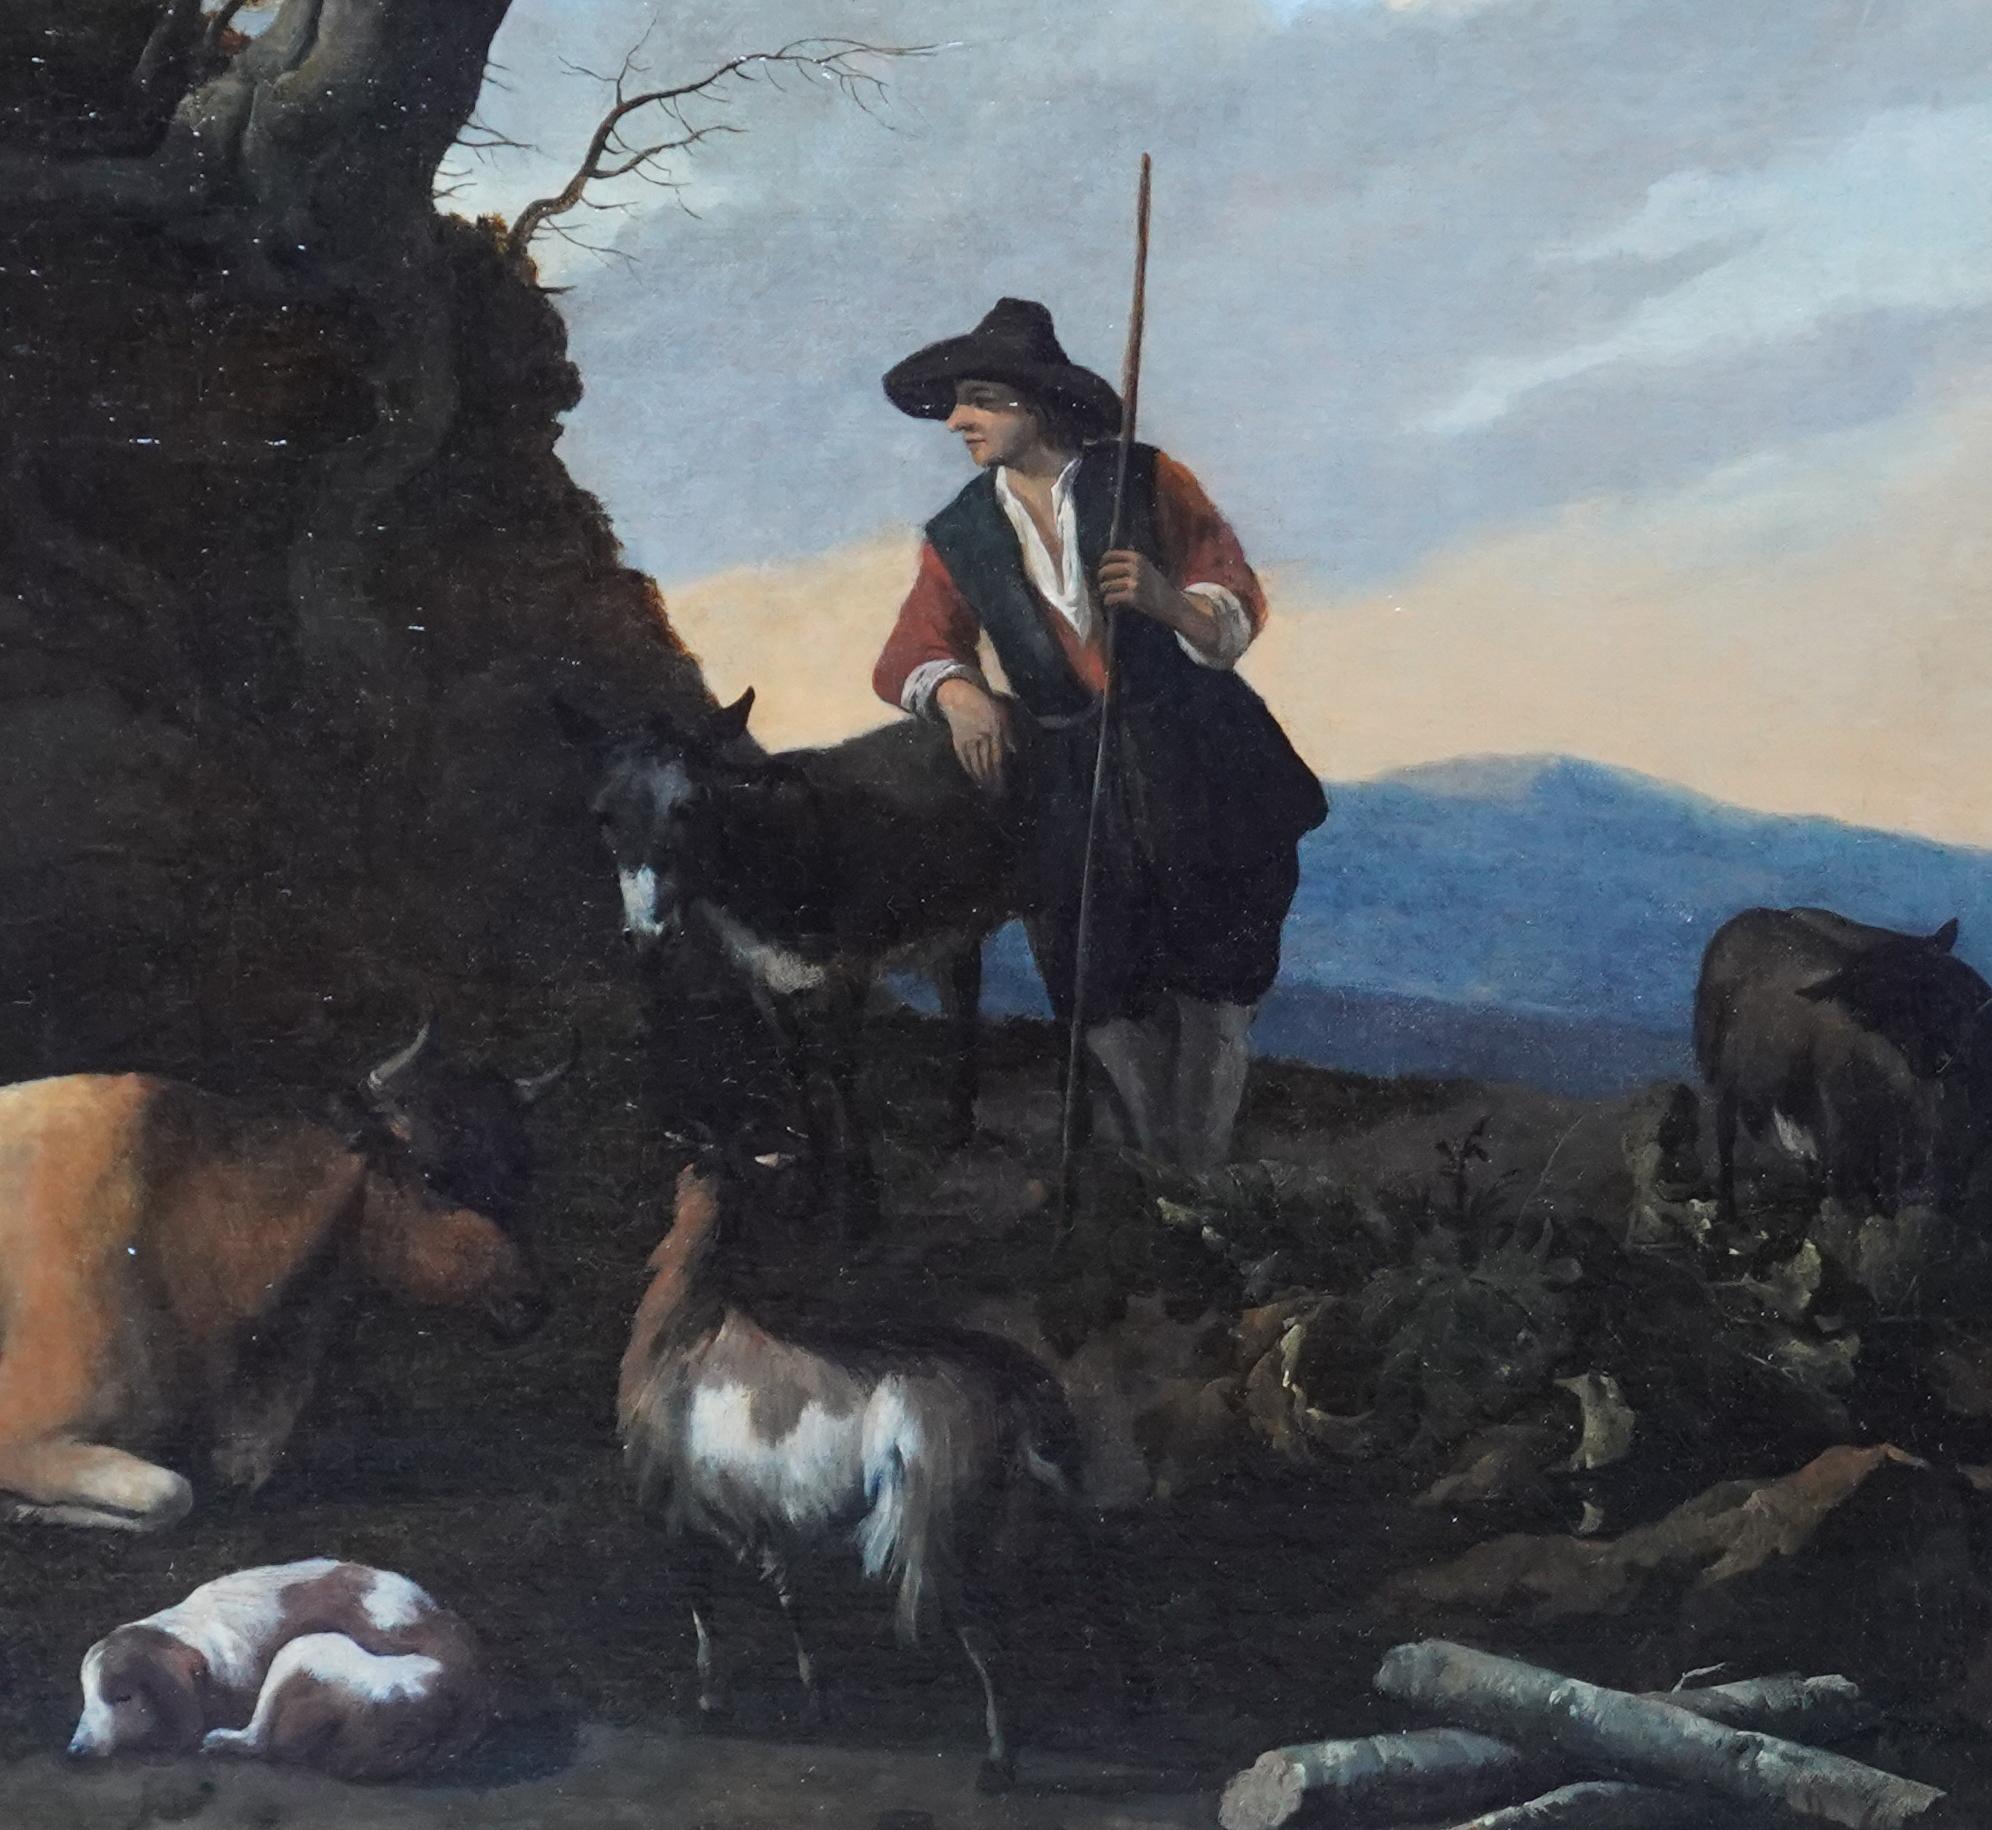 Dieses schöne niederländische Altmeister-Ölgemälde wird dem bekannten niederländischen Künstler Nicholaes Berchem zugeschrieben. Es wurde um 1665 gemalt und zeigt eine bezaubernde pastorale Szene mit einem Hirten und seinen Tieren, darunter Schafe,